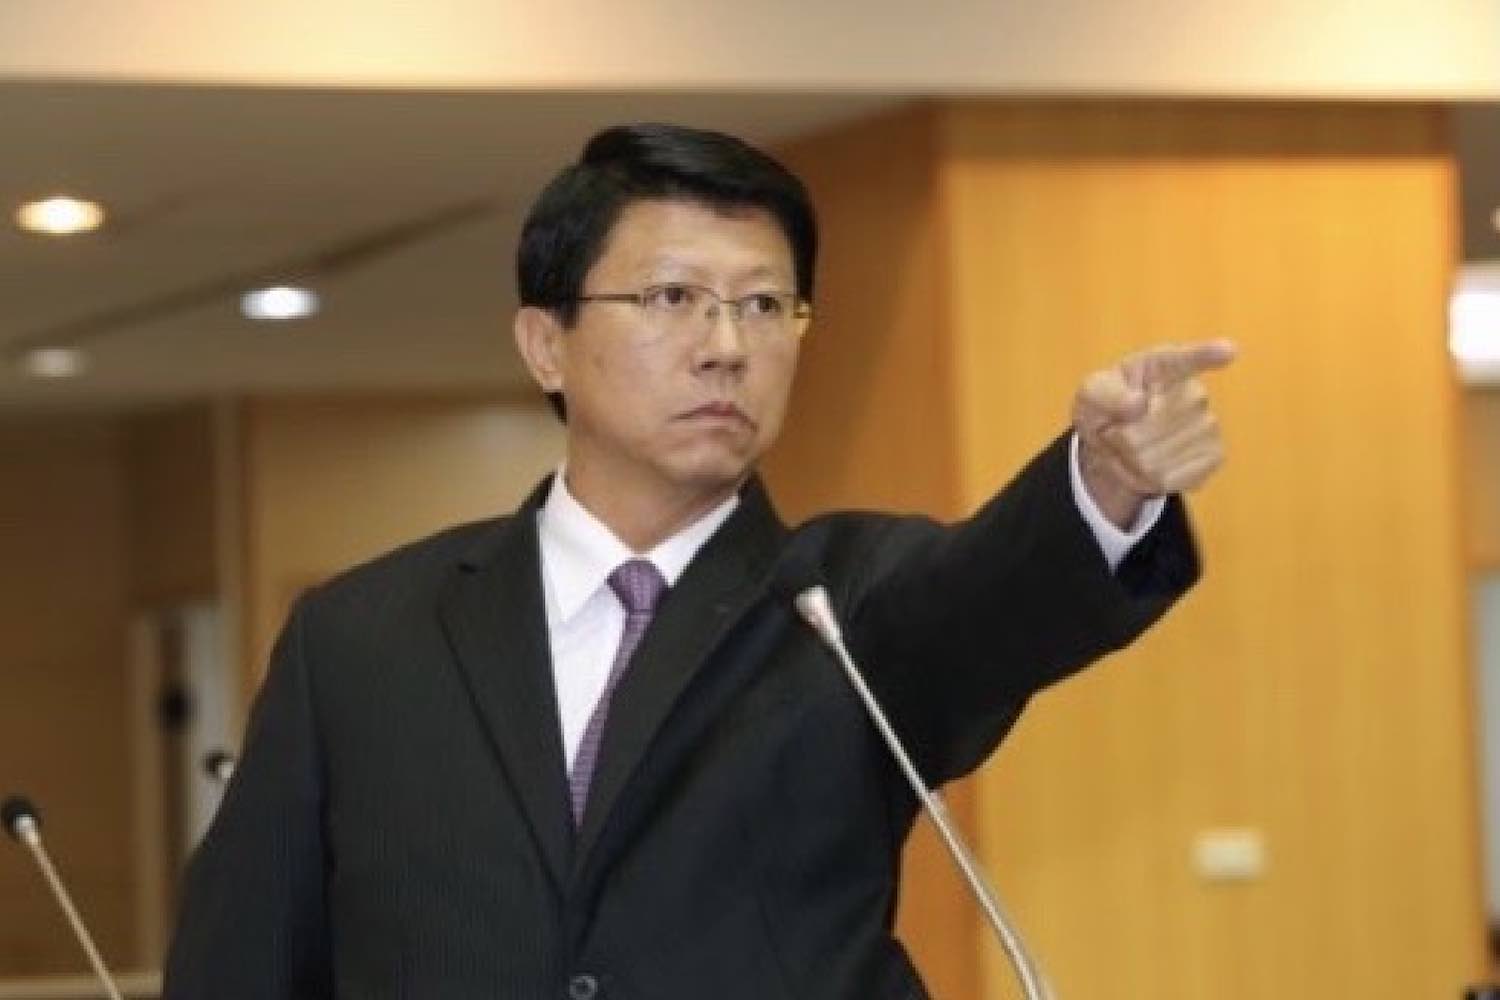 台南市國民黨籍議員謝龍介宣佈參選2022台南市長